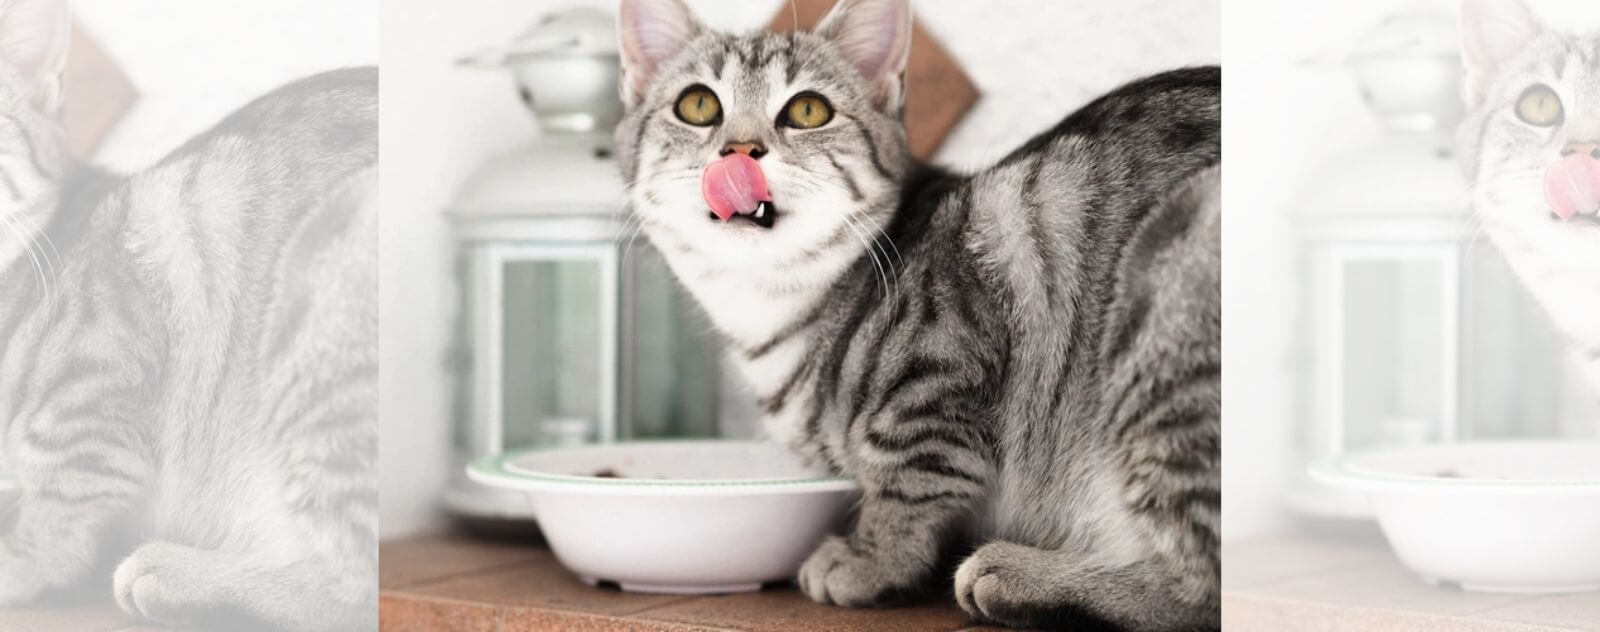 Gato atigrado gris comiendo y bebiendo un plato de leche